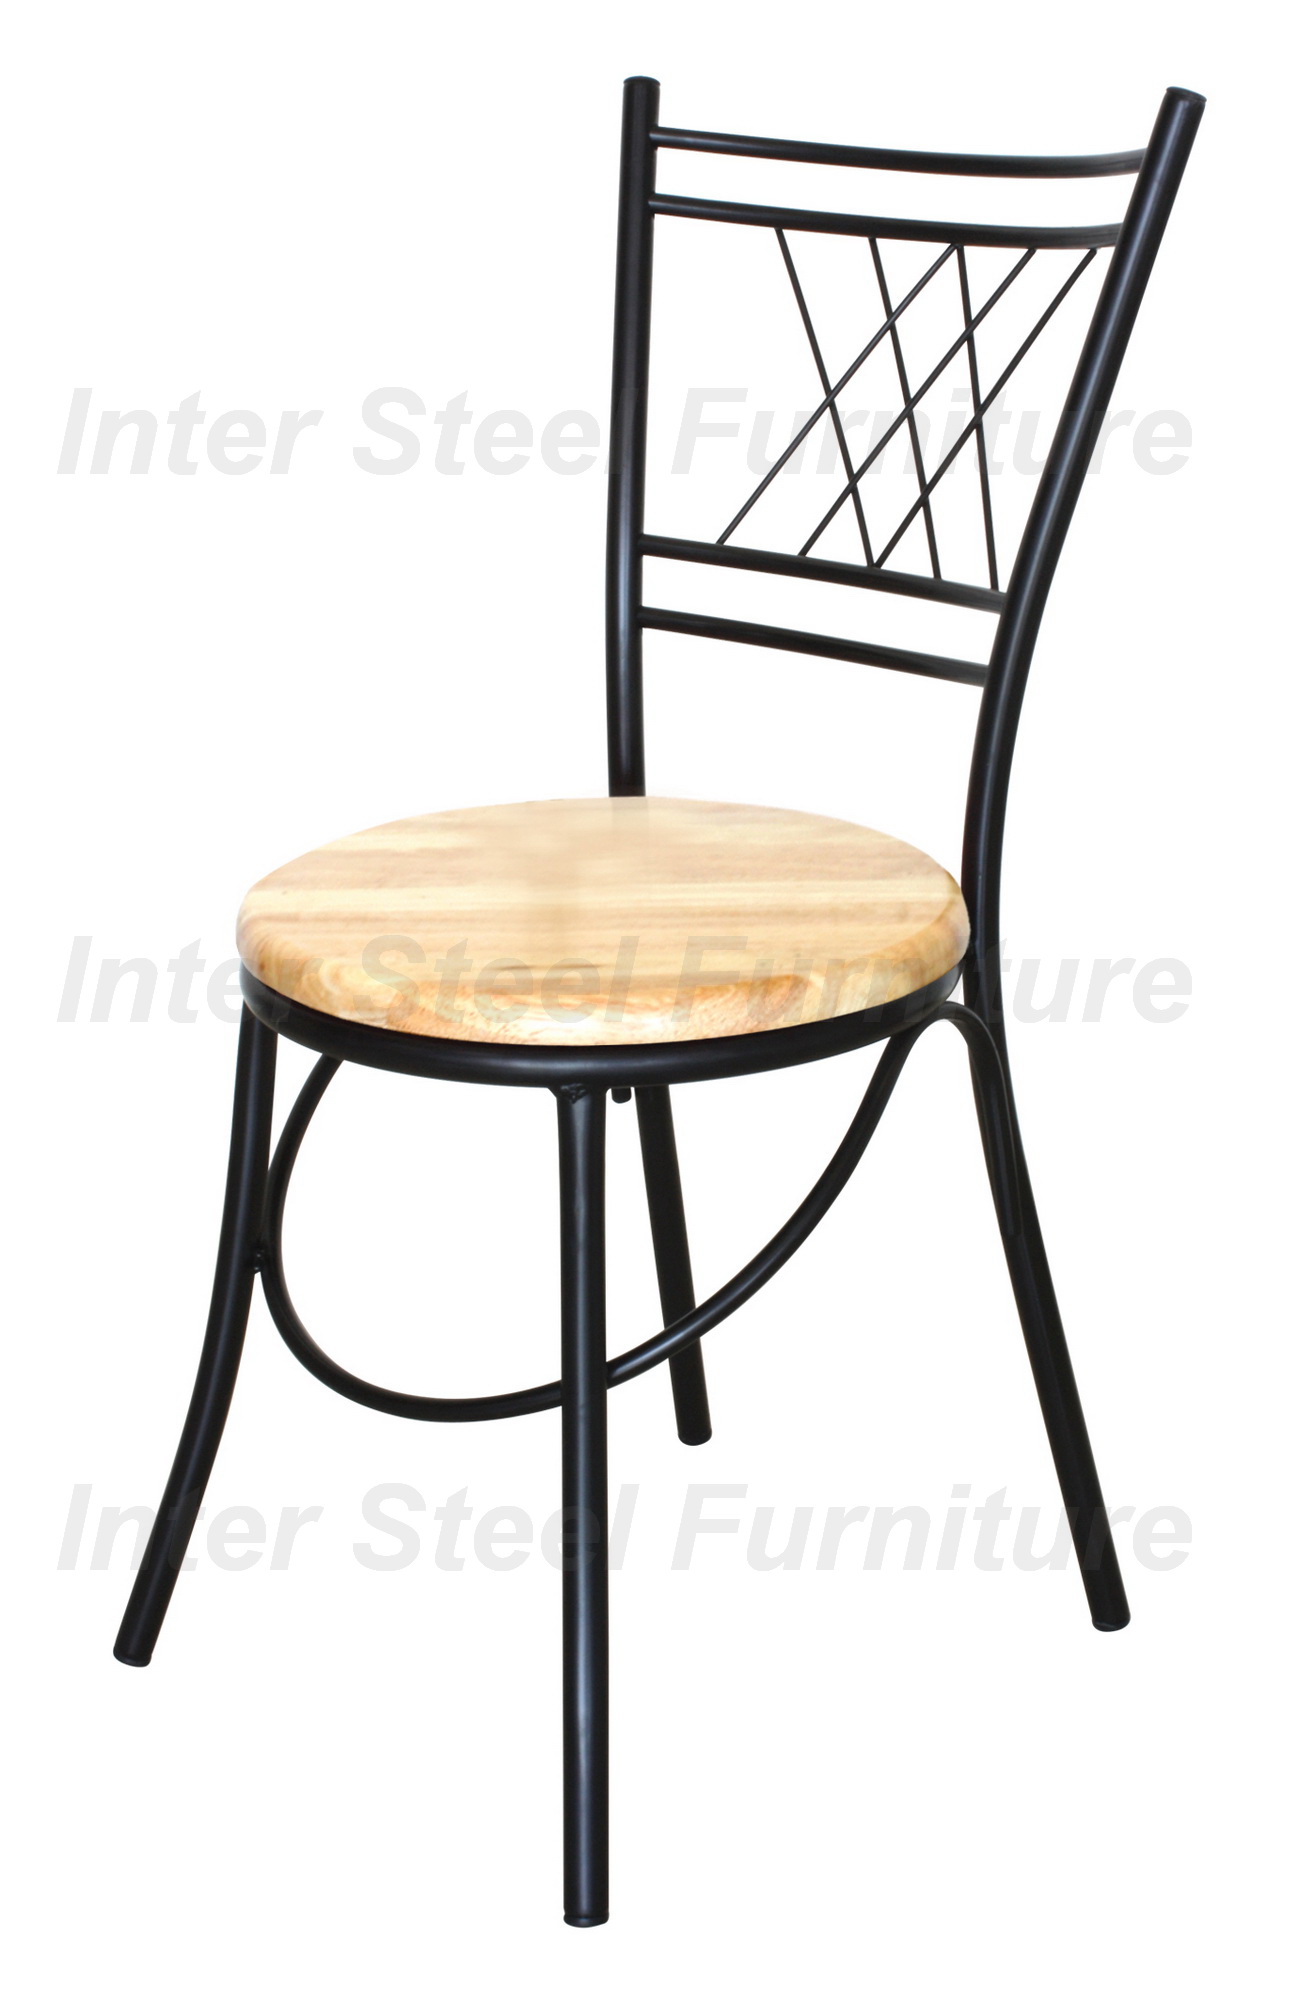 Inter Steel CH111BKPW เก้าอี้เหล็ก เก้าอี้นั่งทานข้าว เก้าอี้กินข้าว รุ่น CH111 โครงสีดำ-ที่นั่งไม้ยางพารา Diner chair steel chair